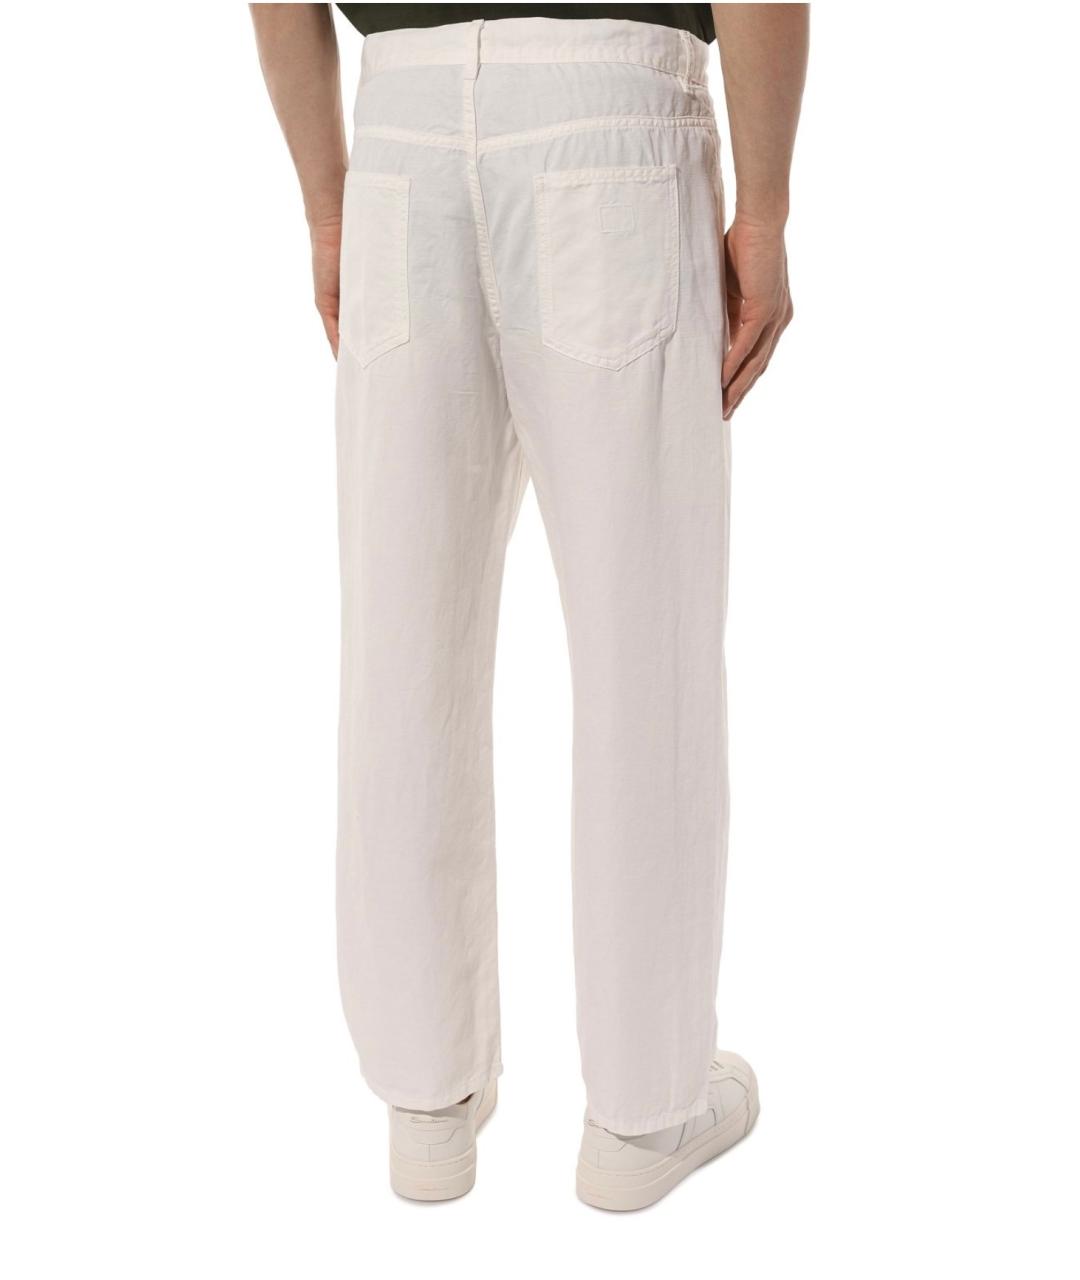 CP COMPANY Белые льняные повседневные брюки, фото 2